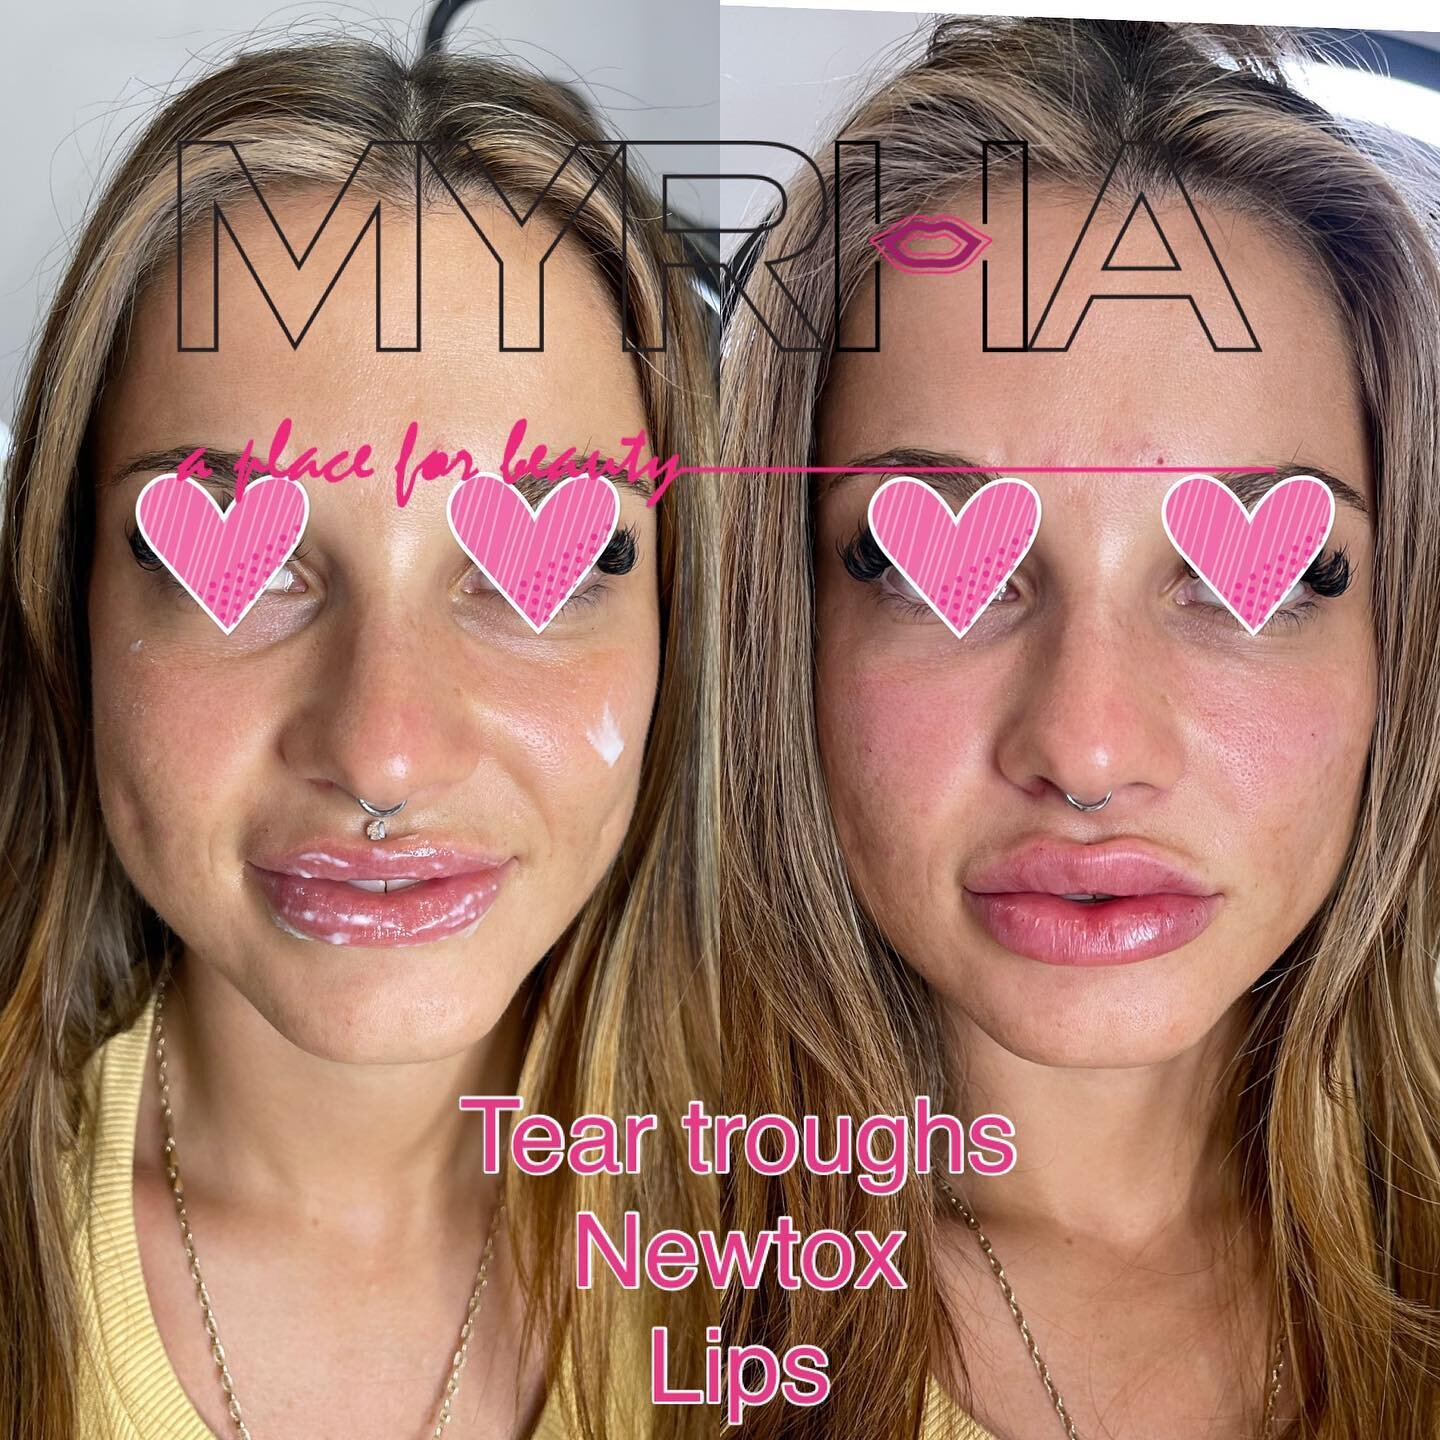 Keep them guessing. 
⠀
🅜🅨 🅦🅞🅡🅚 #6ixlips #myrhalips
𝙁𝙤𝙧 𝙋𝙧𝙤𝙛𝙚𝙨𝙨𝙞𝙤𝙣𝙖𝙡 𝙥𝙖𝙜𝙚, 𝙫𝙞𝙨𝙞𝙩:
𝗣𝗜𝗖𝗢𝗦𝗨𝗥𝗘 𝗣𝗥𝗢 𝗟𝗔𝗦𝗘𝗥 @freelovebeautyhealth
𝗙𝗔𝗖𝗘 𝗪𝗢𝗥𝗞&nbsp;&nbsp;&nbsp;@myrha_beauty
𝗟𝗜𝗣 𝗪𝗢𝗥𝗞 @6ix_lips
𝗠𝗜𝗡?